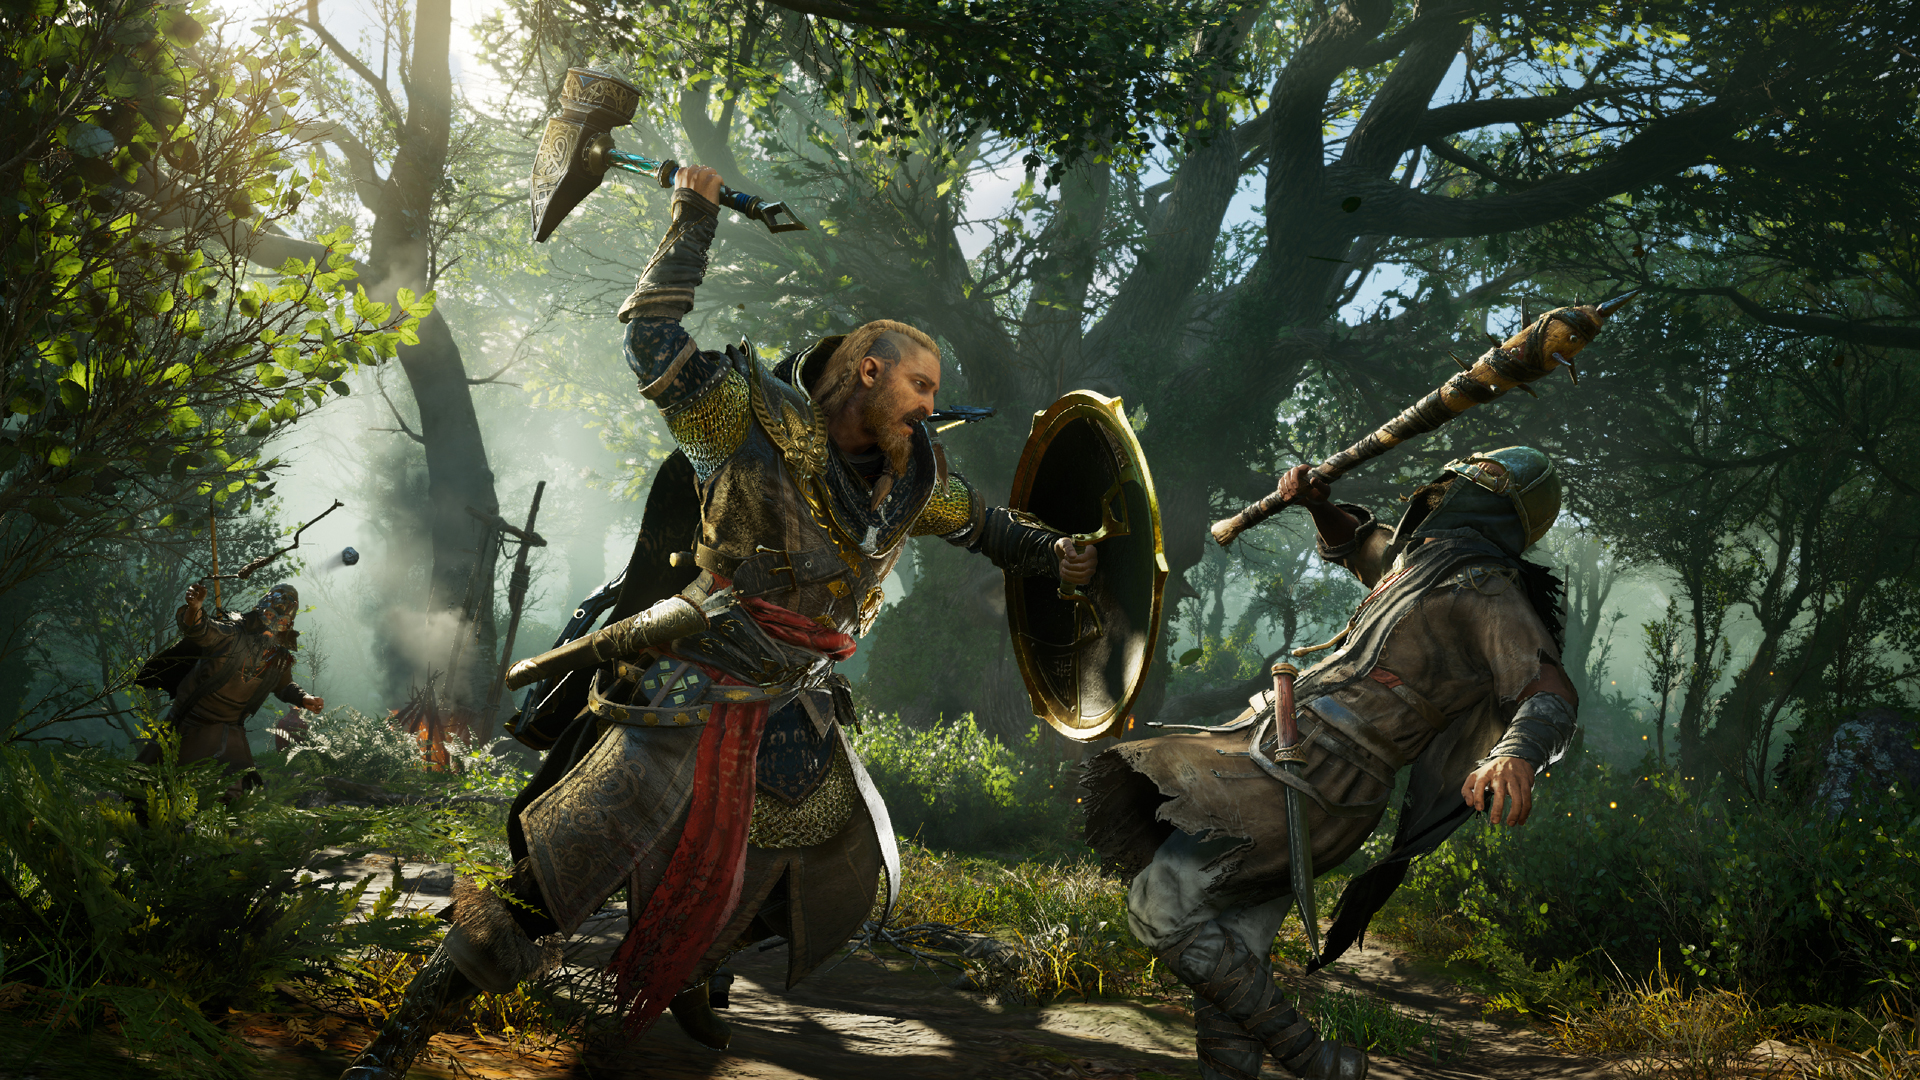 Assassin's Creed Valhalla - Xbox One e Xbox Series S